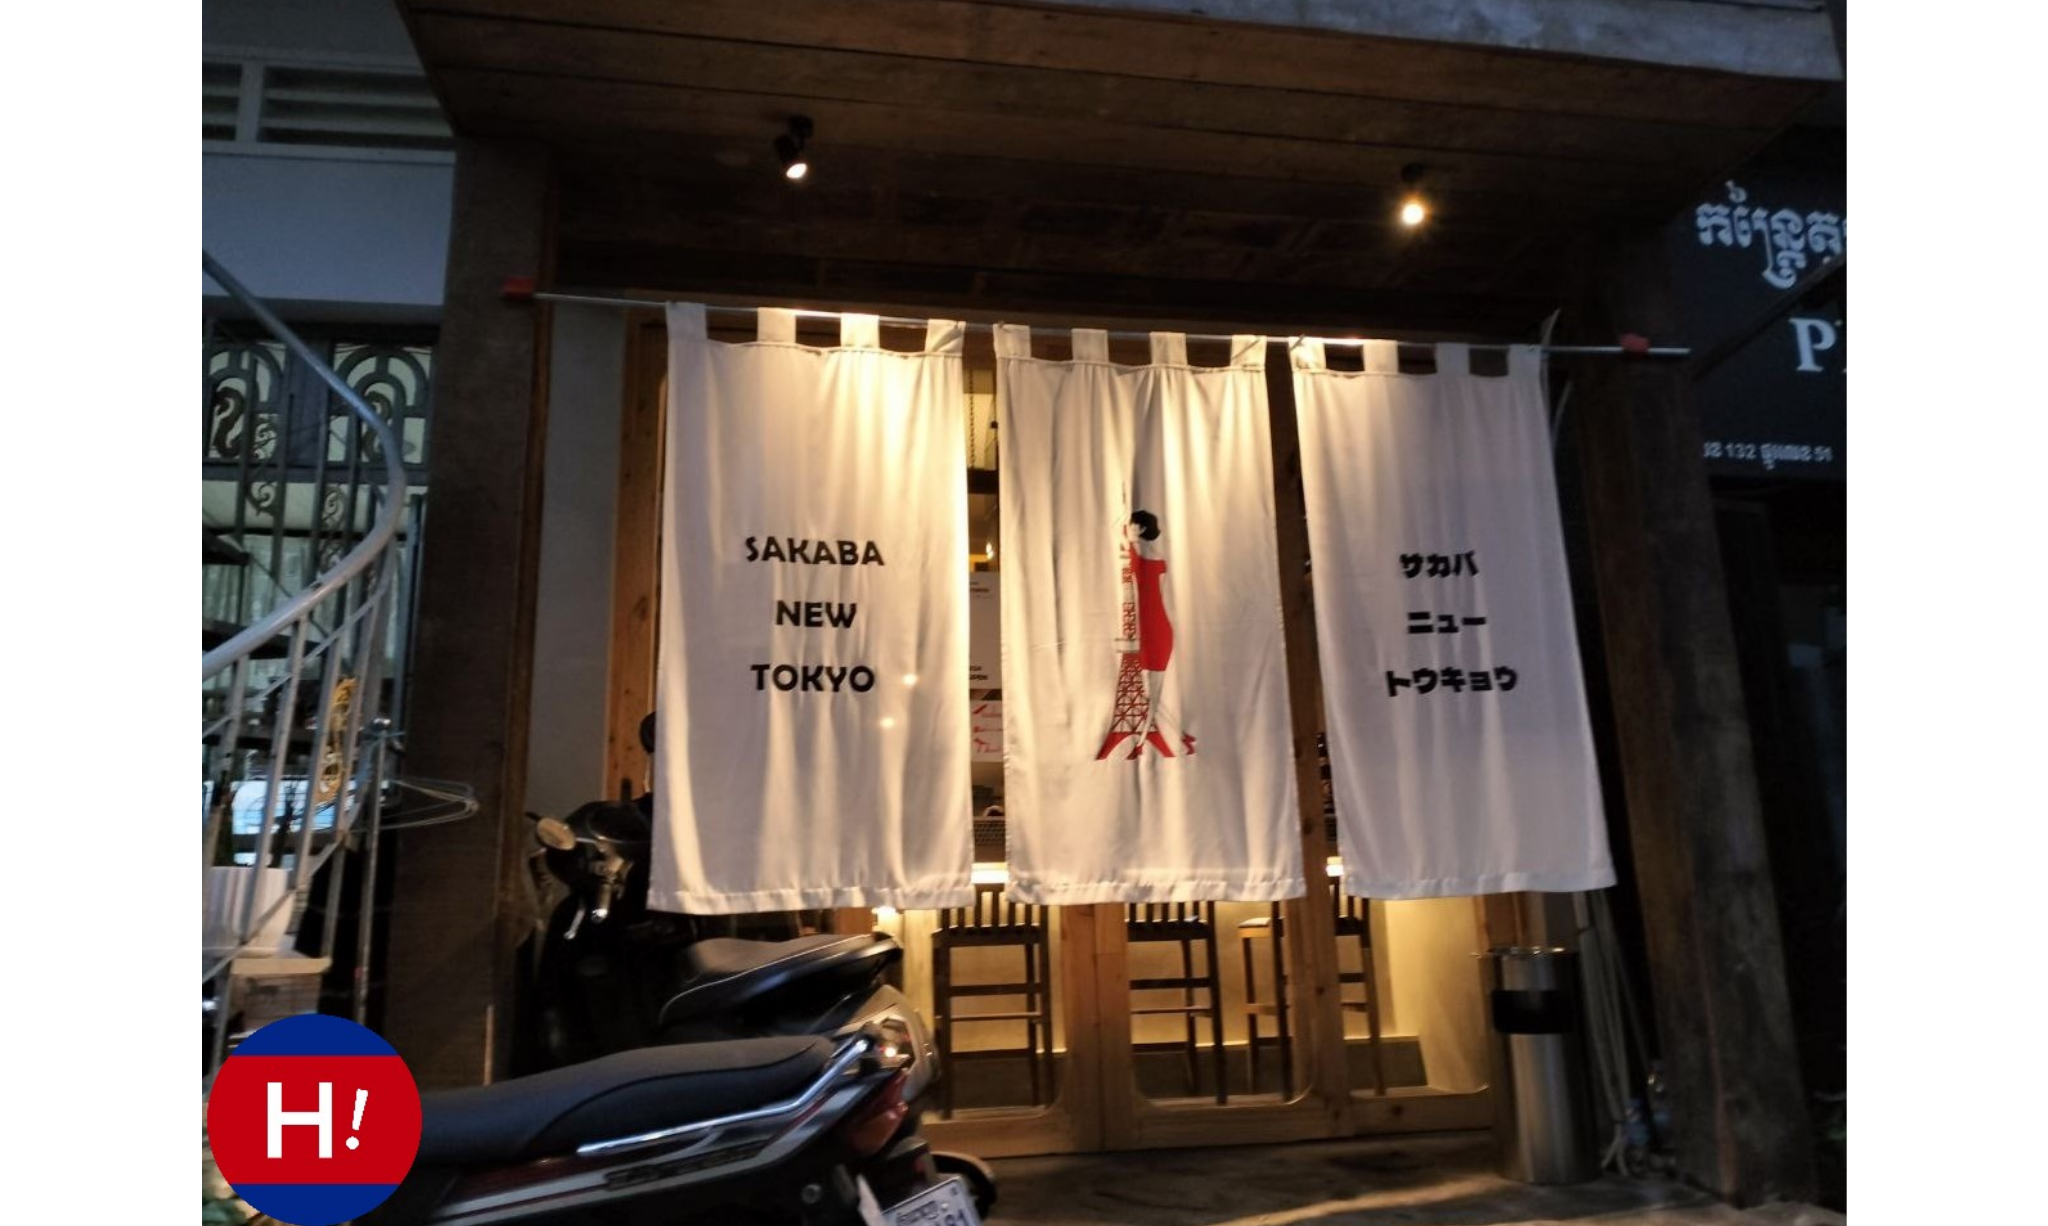 プノンペンのカツオの藁焼きを堪能できるSAKABA NEW TOKYO